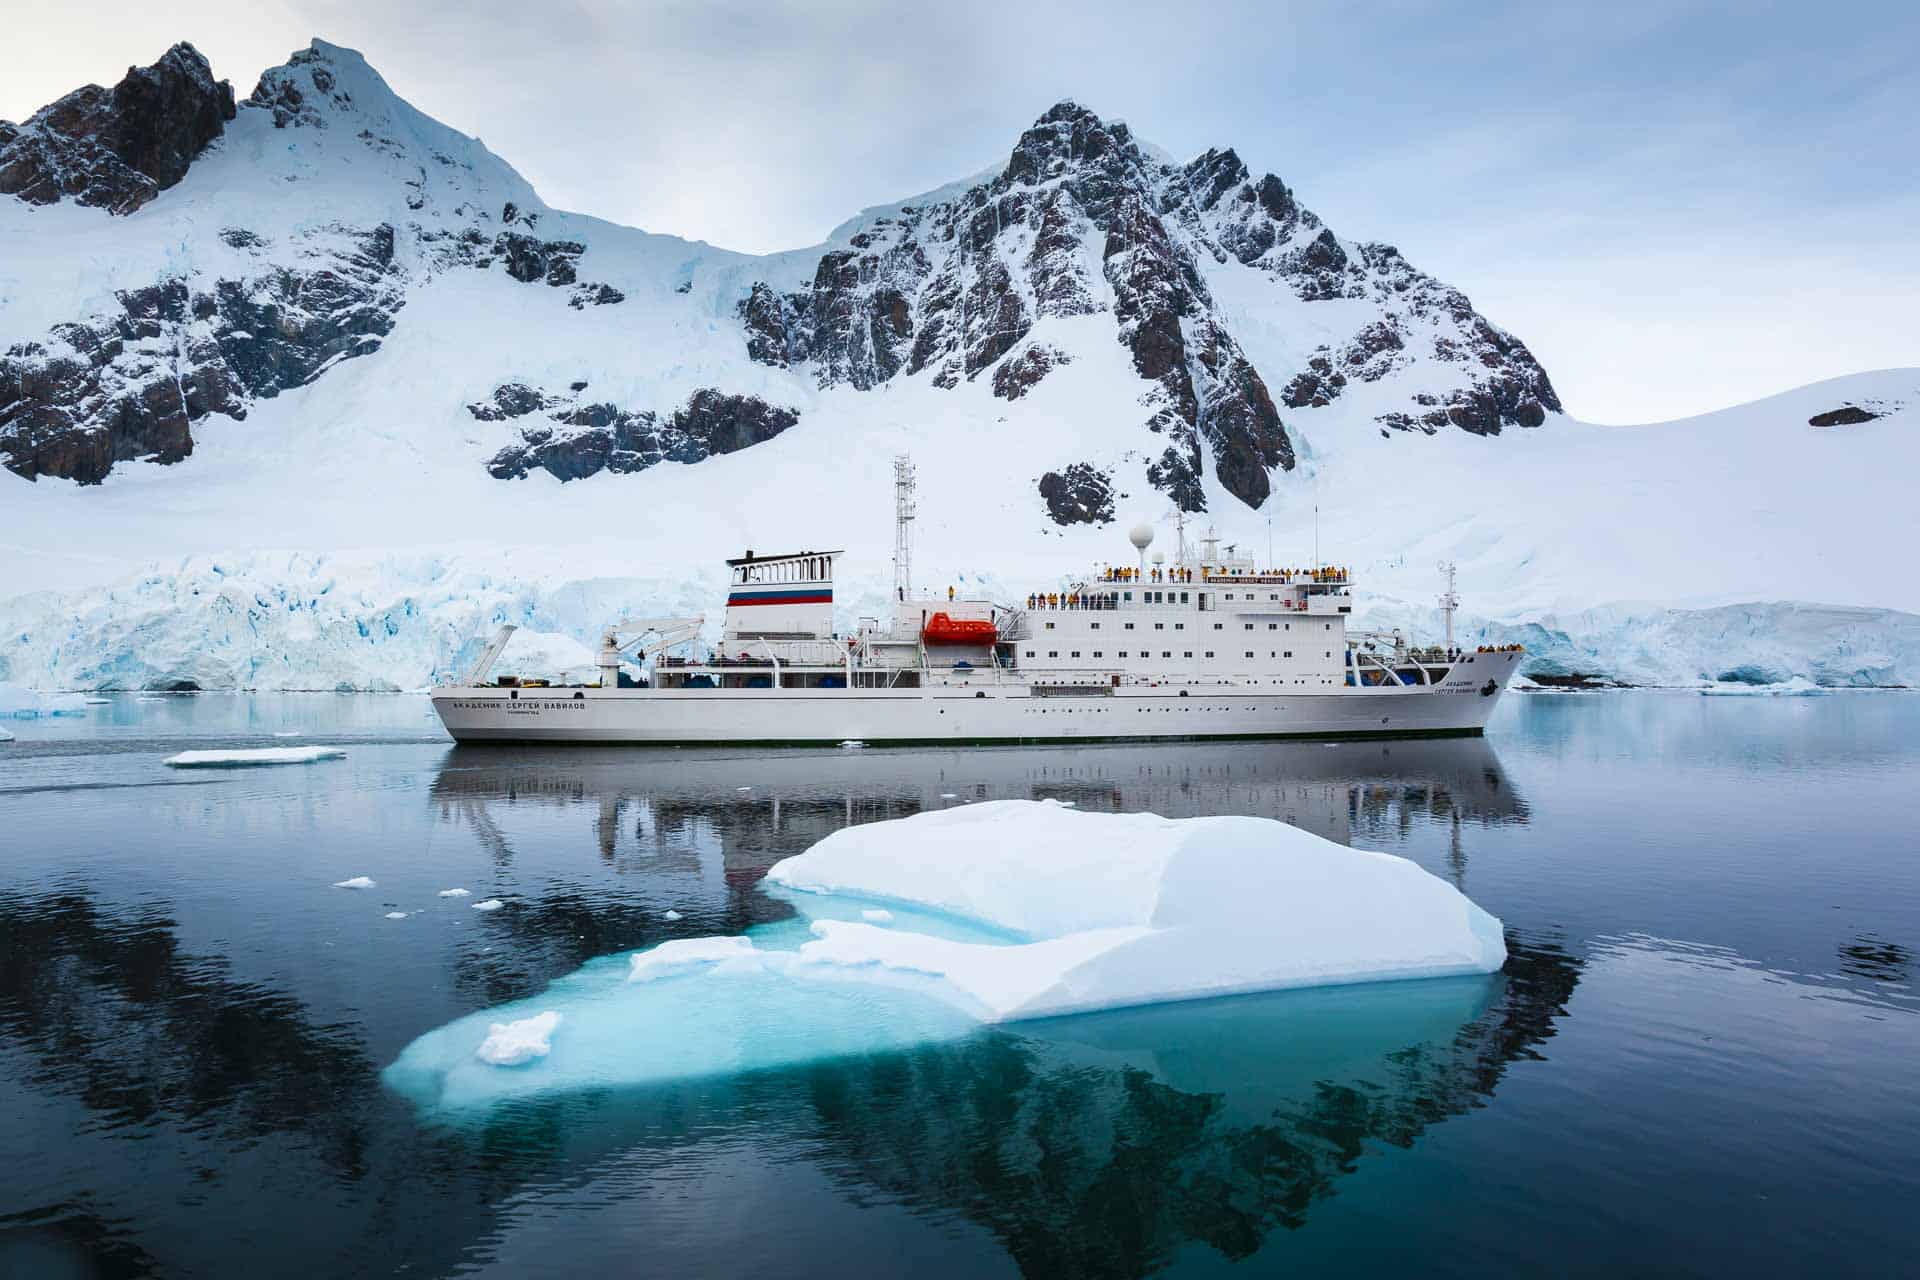 antarctica eco tourism